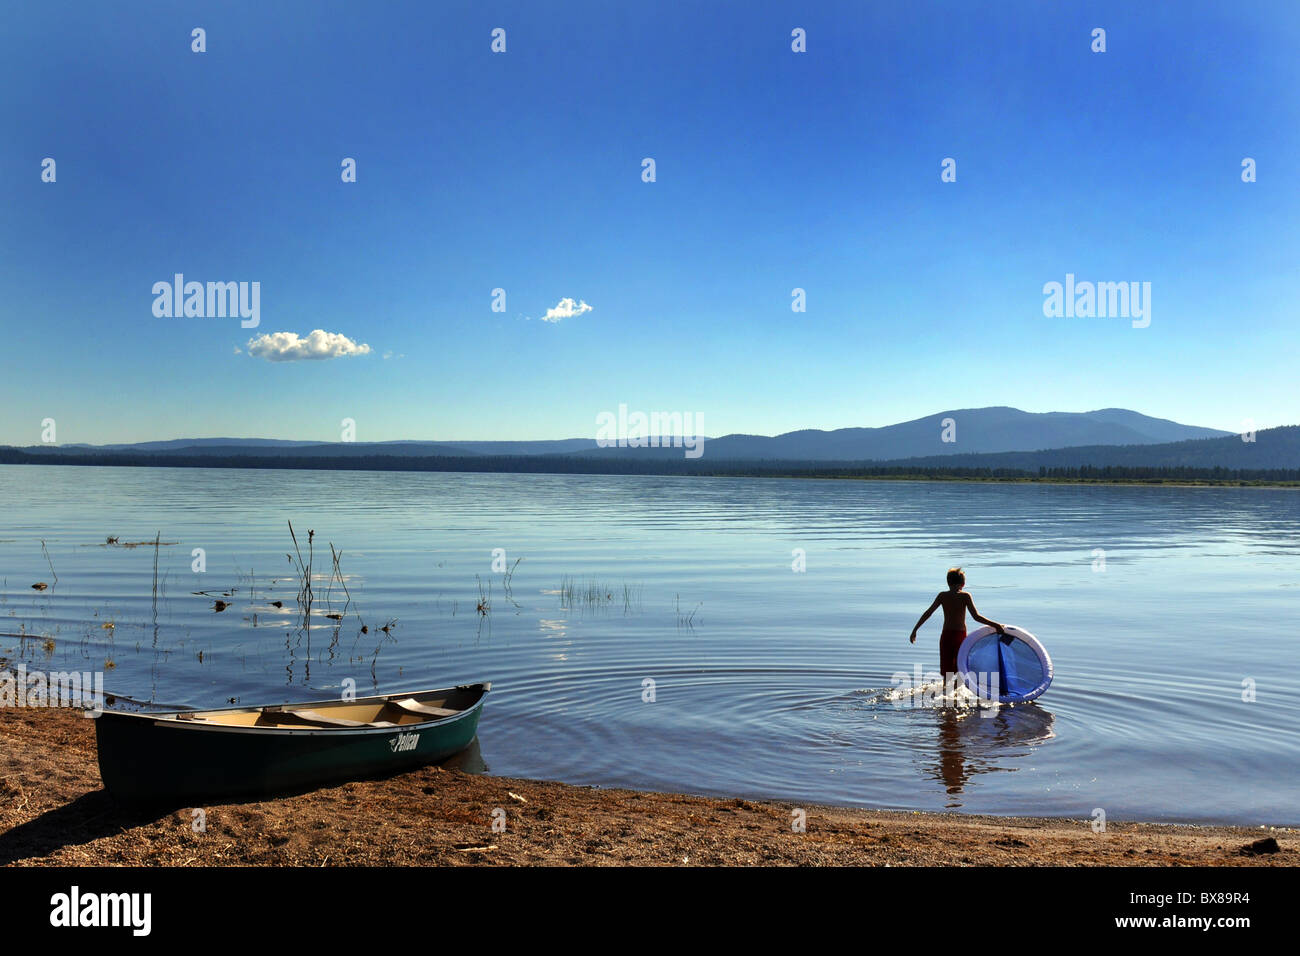 Un ragazzo bagna in acqua per raffreddare, Lago Almanor, California USA Foto Stock